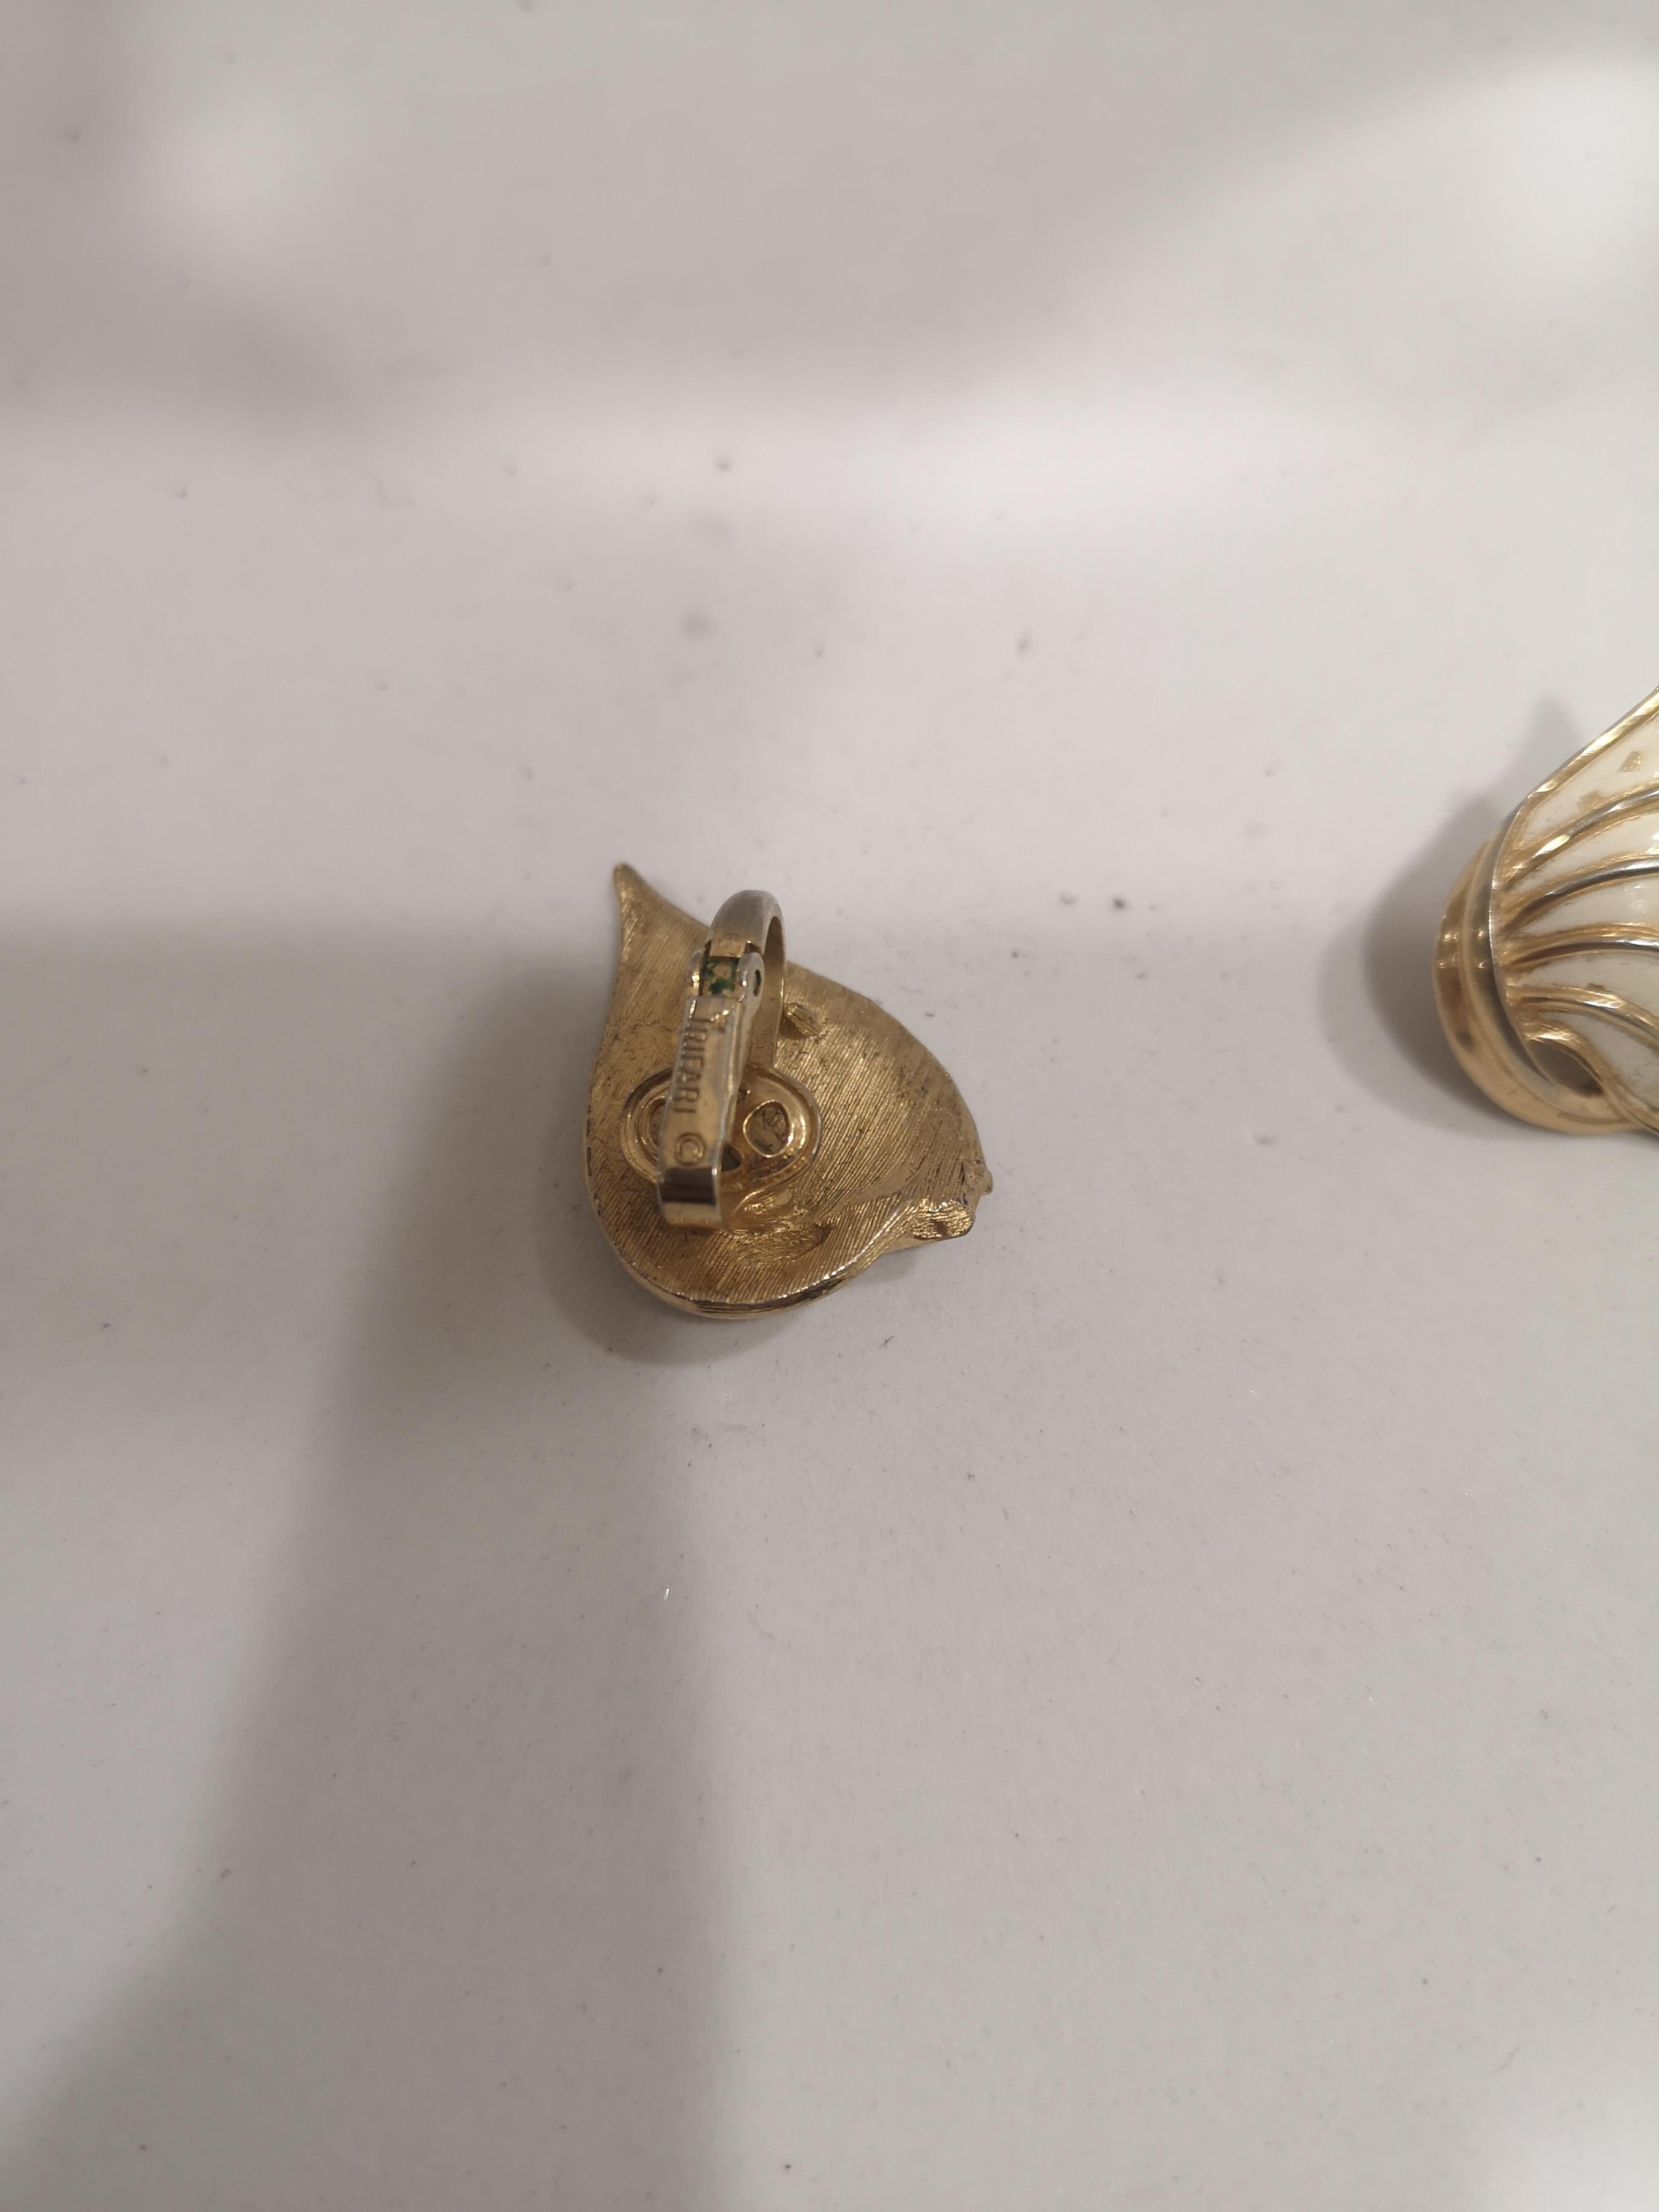 Trifari gold tone white shells clip on earrings
3*2 cm